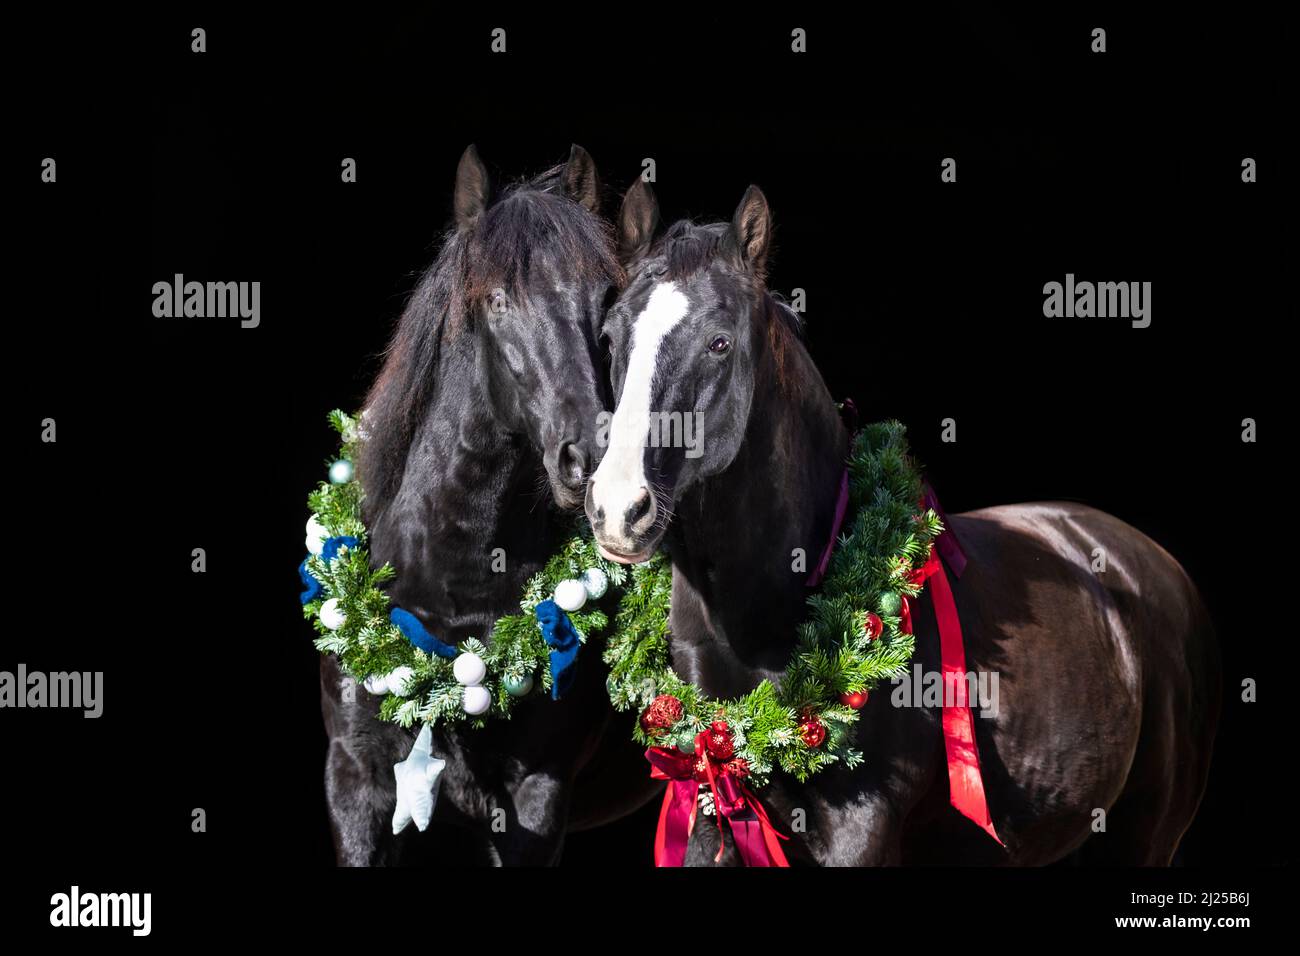 Oldenburger Pferd und reines spanisches Pferd, andalusisch. Porträt von zwei schwarzen Pferden in Weihnachtskränzen, vor schwarzem Hintergrund Stockfoto